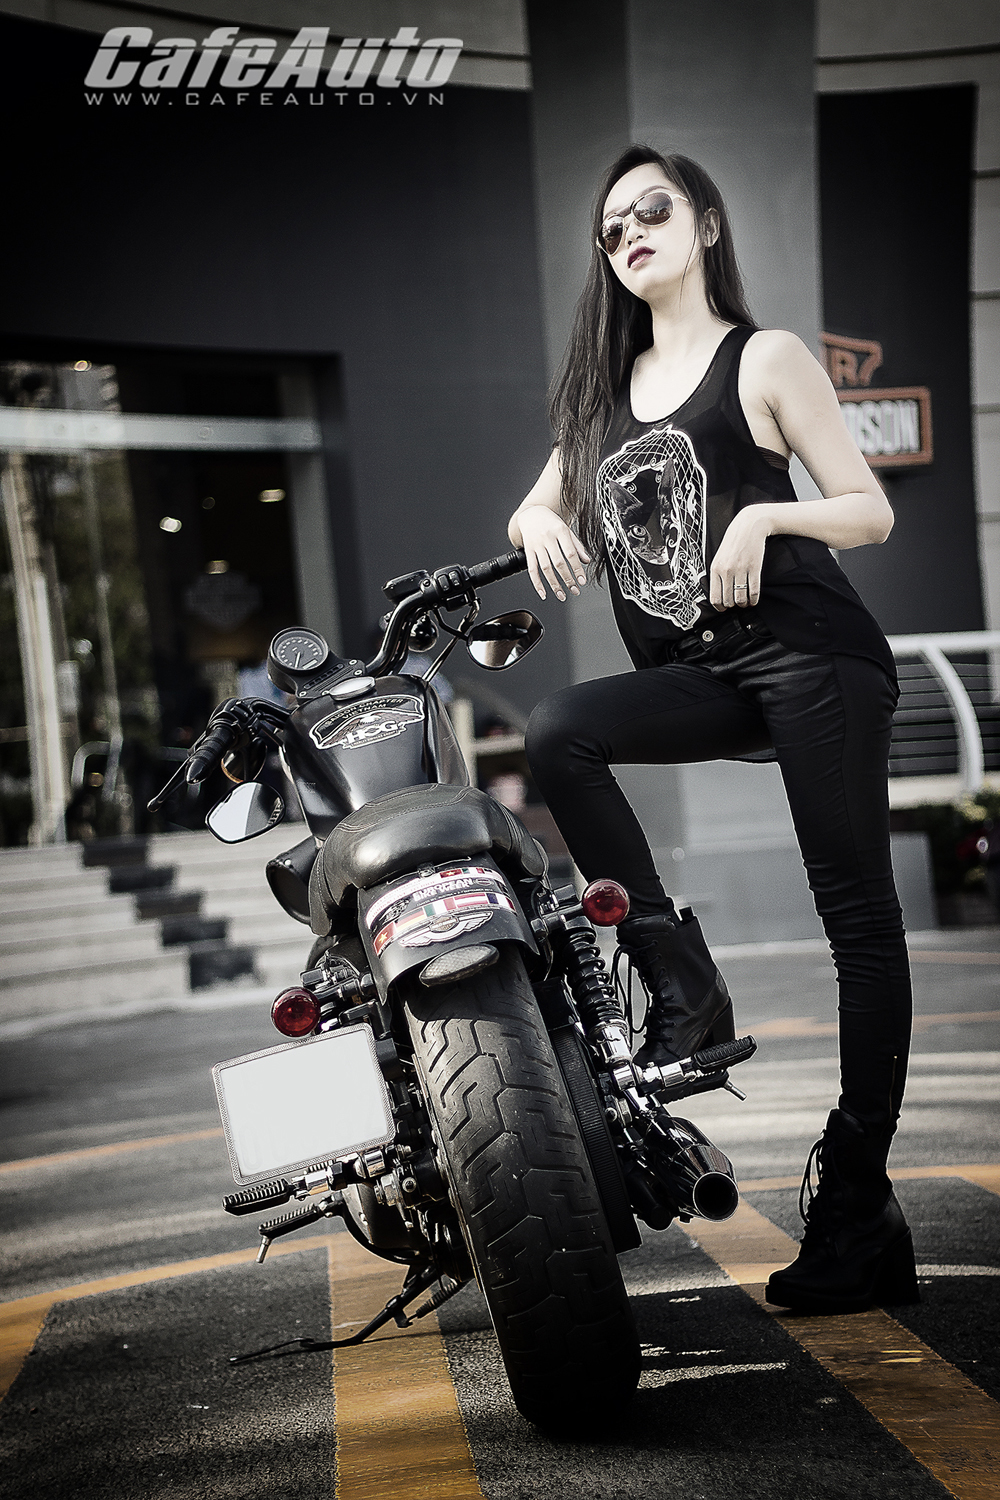 Harley Davidson Sportster Iron manh me ben nguoi dep chan dai - 6